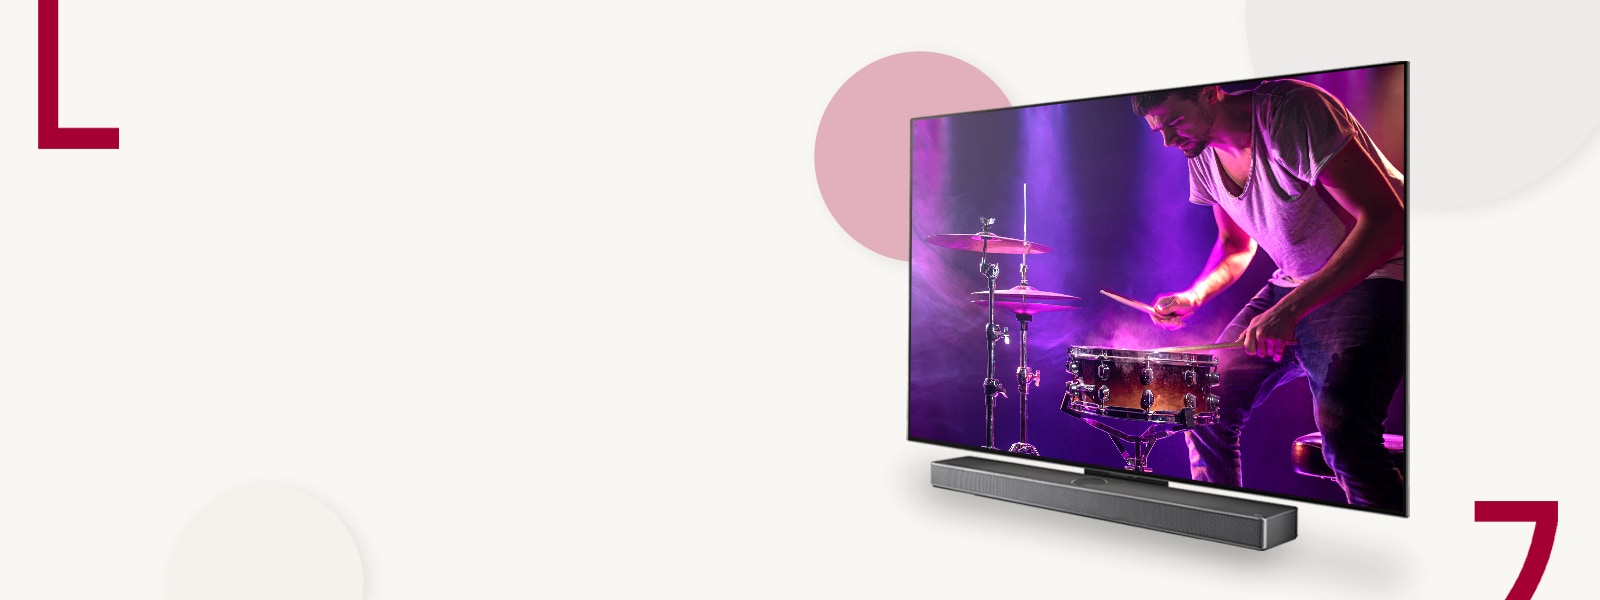 Hình ảnh của LG OLED C3 và Soundbar chống lại  Một phông nền màu kem với các vòng tròn màu. Một người đàn ông chơi trống trên màn hình. 